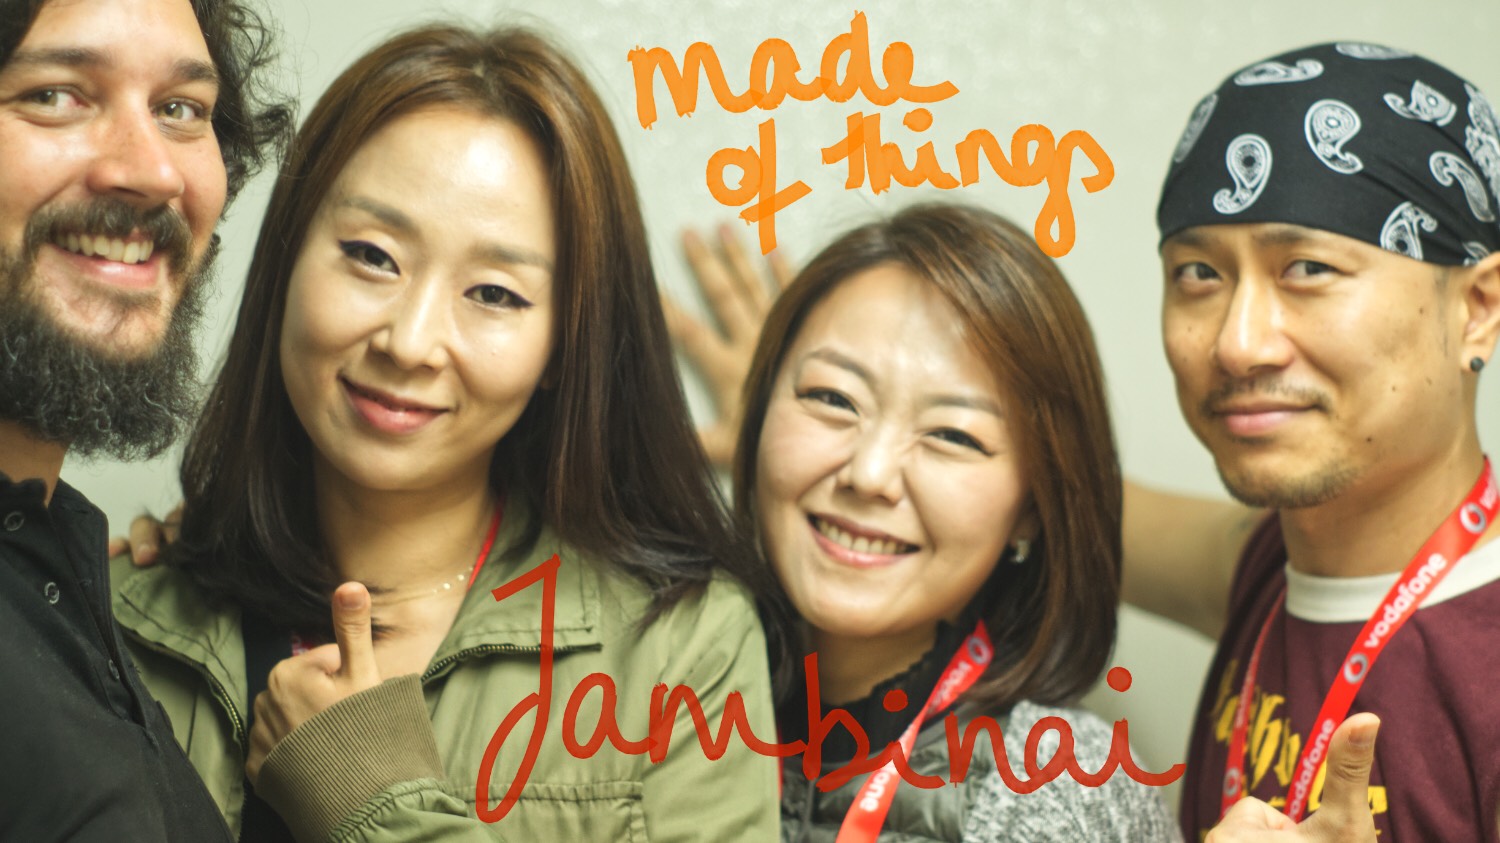 jambinai on made of things: antonio, bo-mi, eun-yong, choi